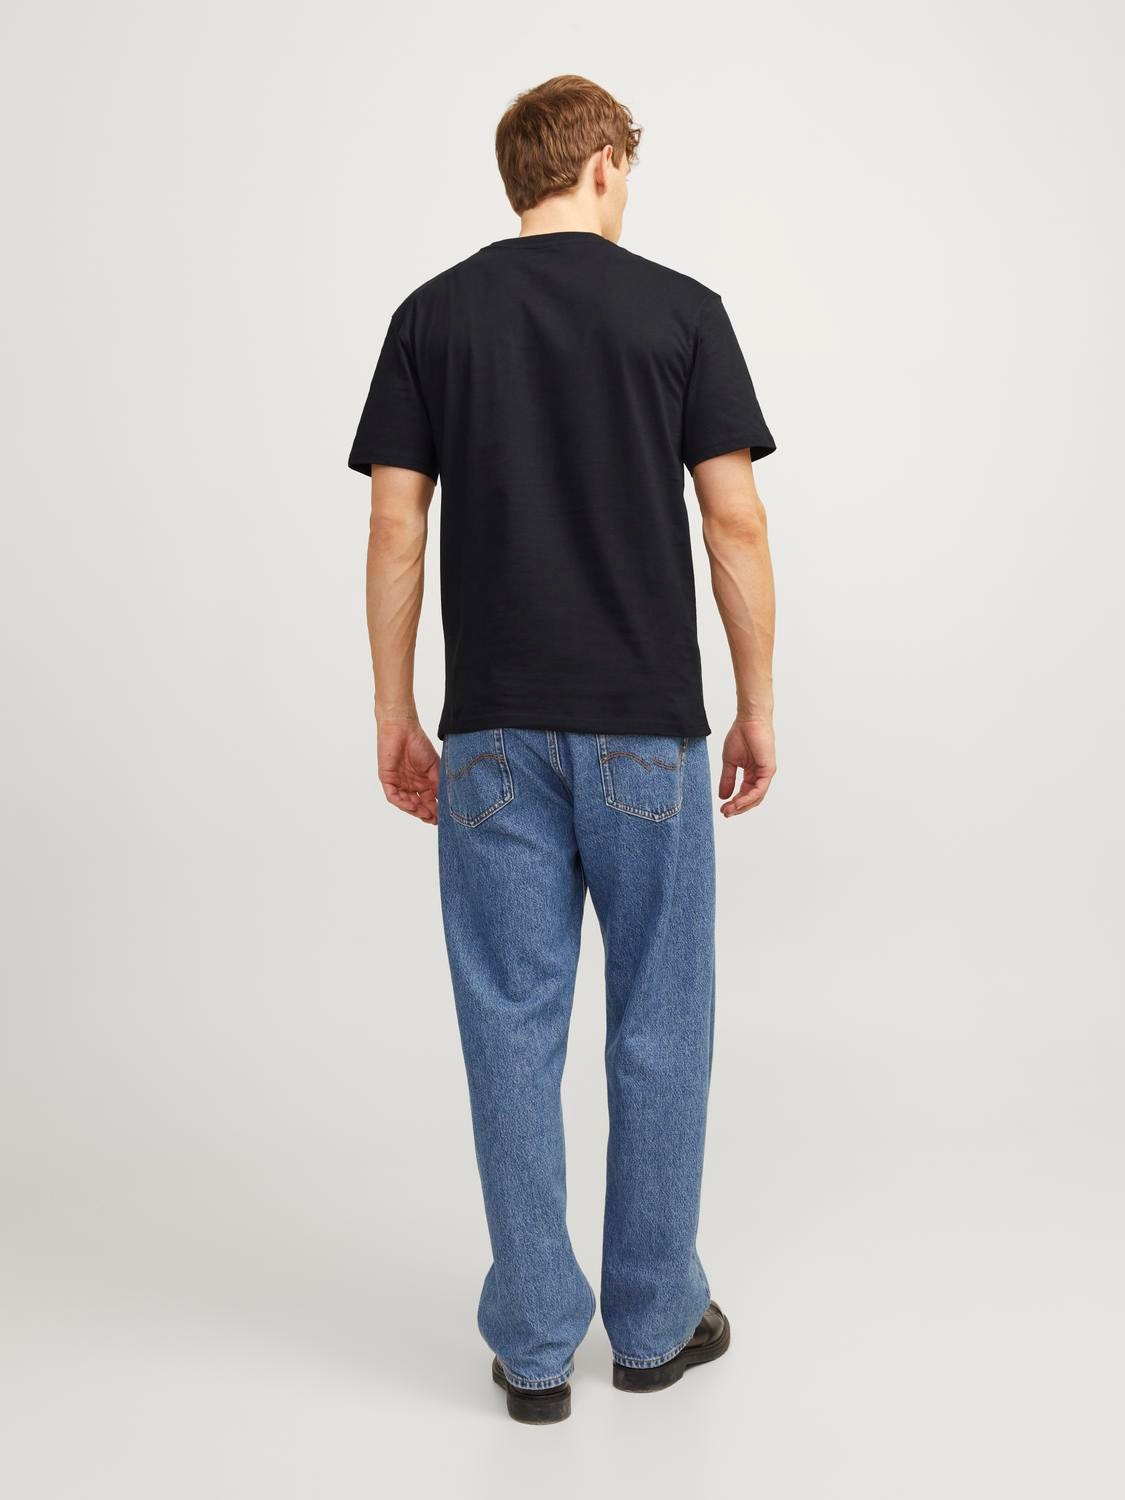 Jack & Jones Plain O-Neck T-shirt -Black - 12190467